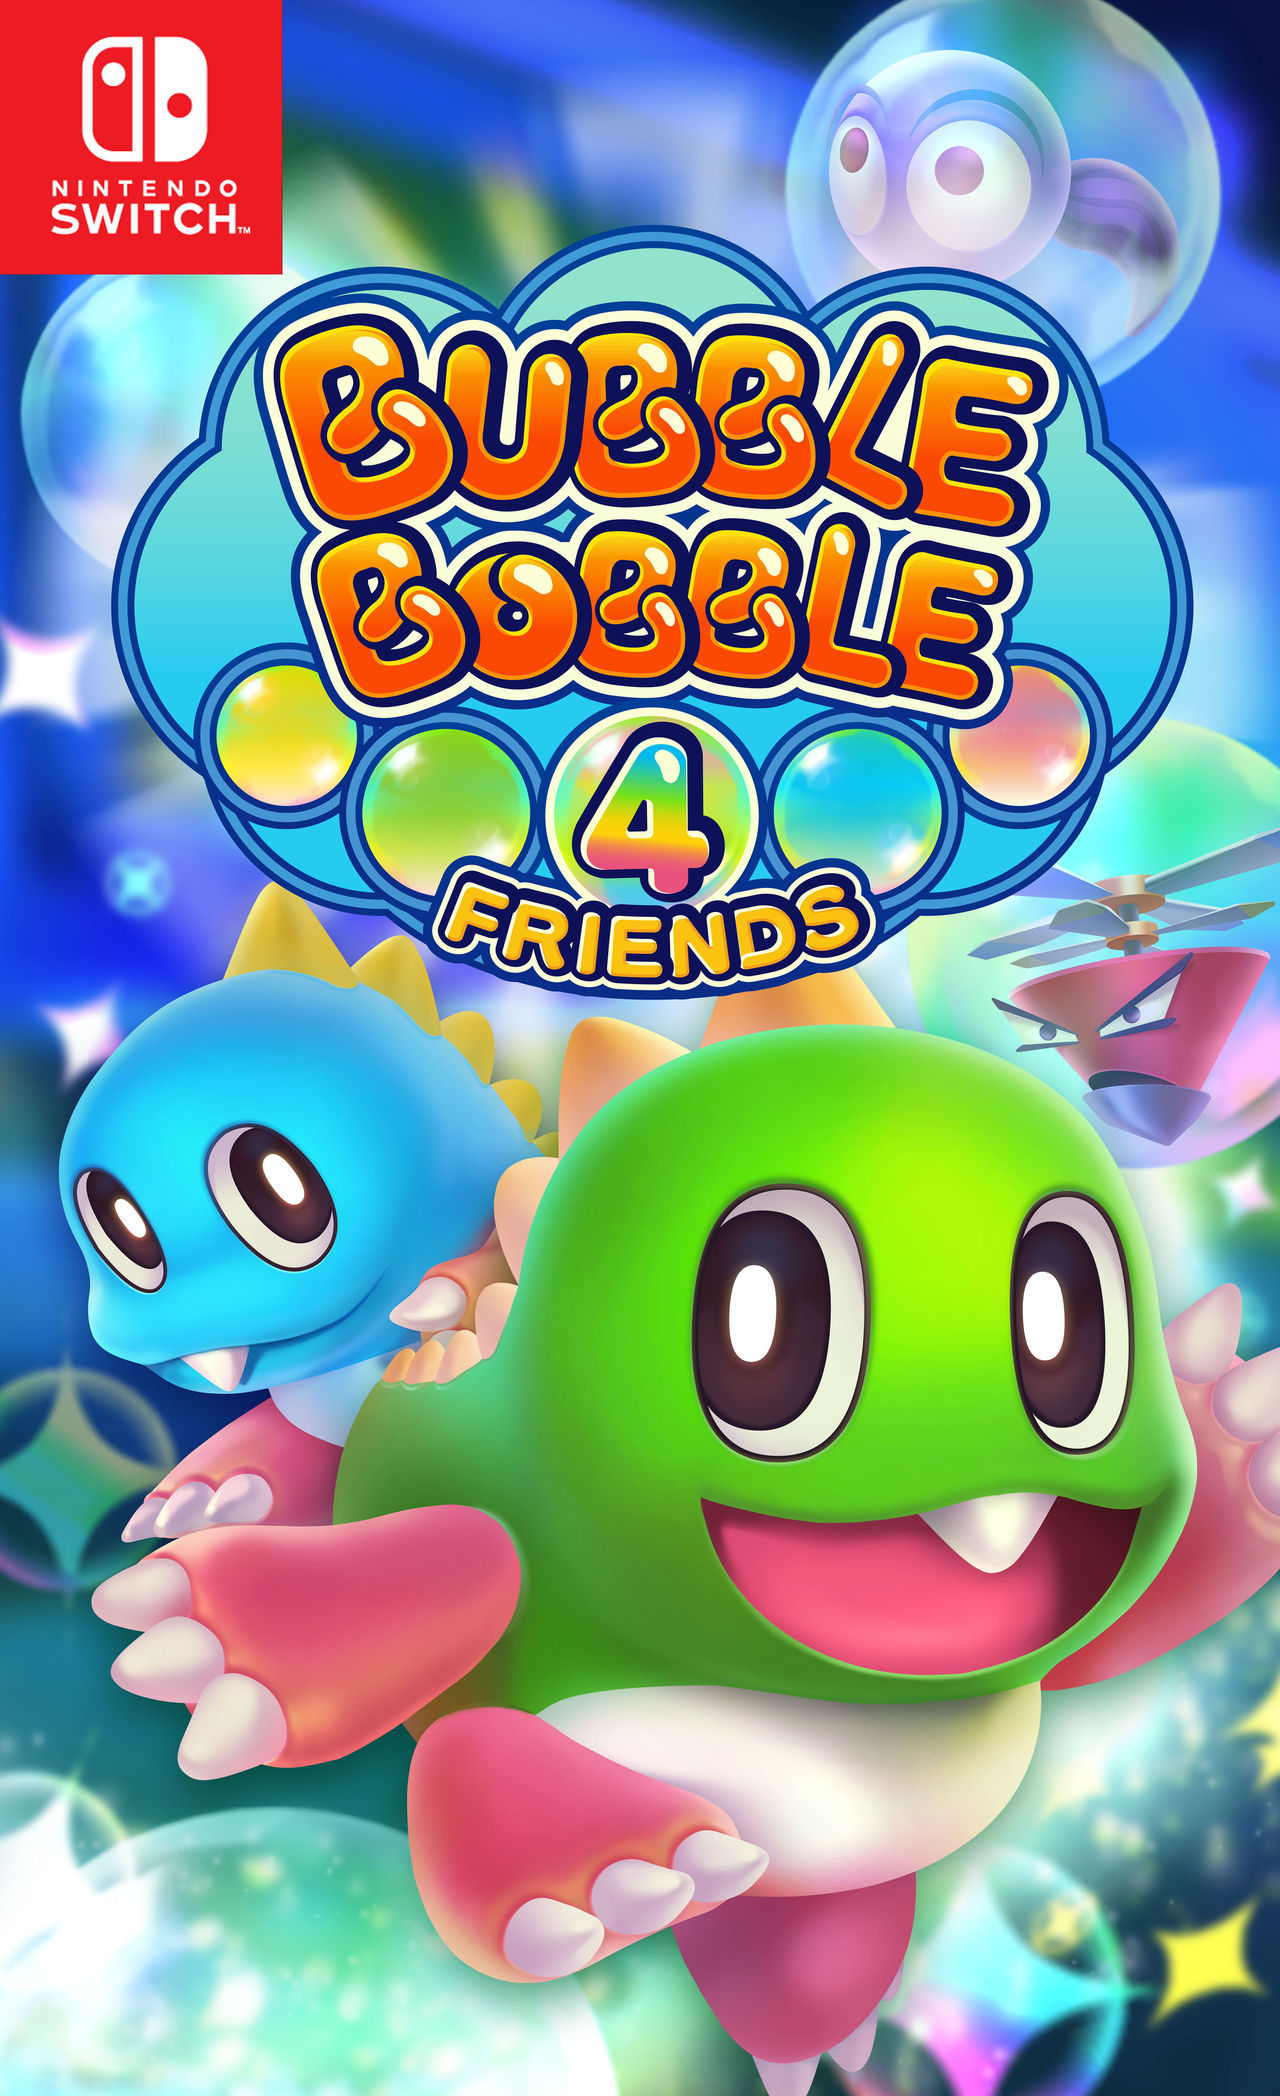 cúbico Máquina de recepción Cosquillas Bubble Bobble 4 Friends - Videojuego (Switch, PC y PS4) - Vandal